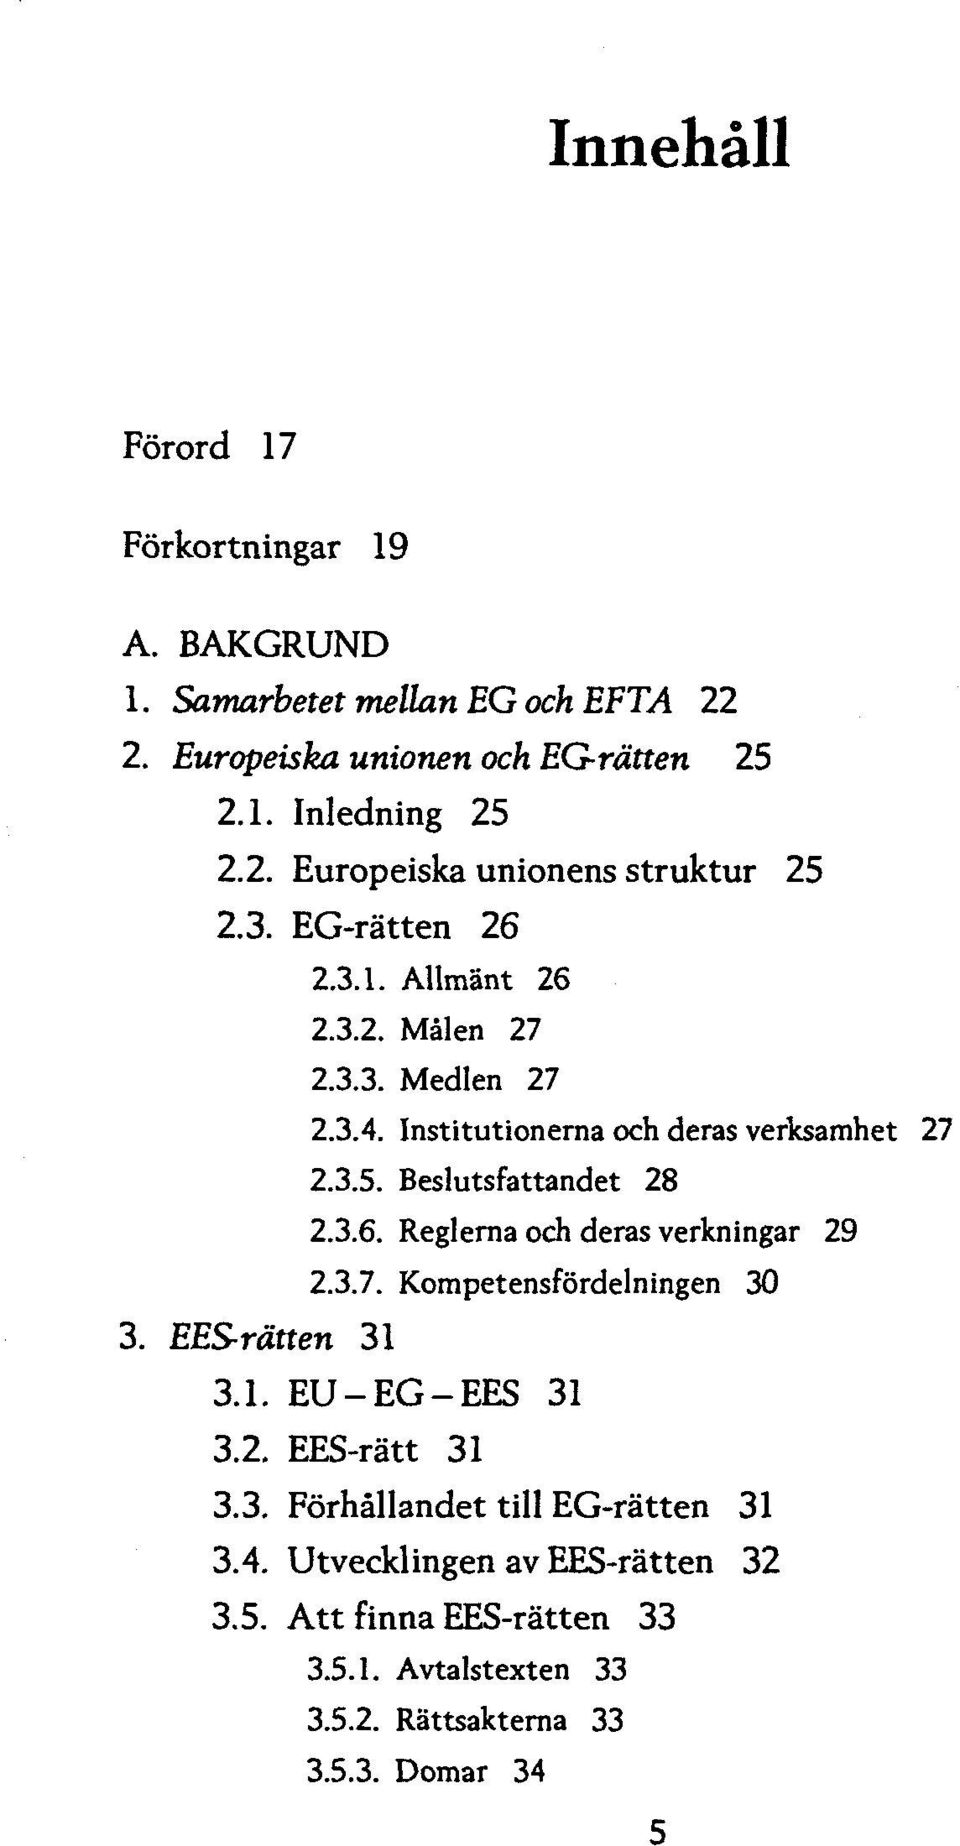 3.7. Kompetensfordelningen 30 3. EES-rdtten 31 3.1. EU-EG-EES 31 3.2. EES-ratt 31 3.3. Forhallandet till EG-ratten 31 3.4.